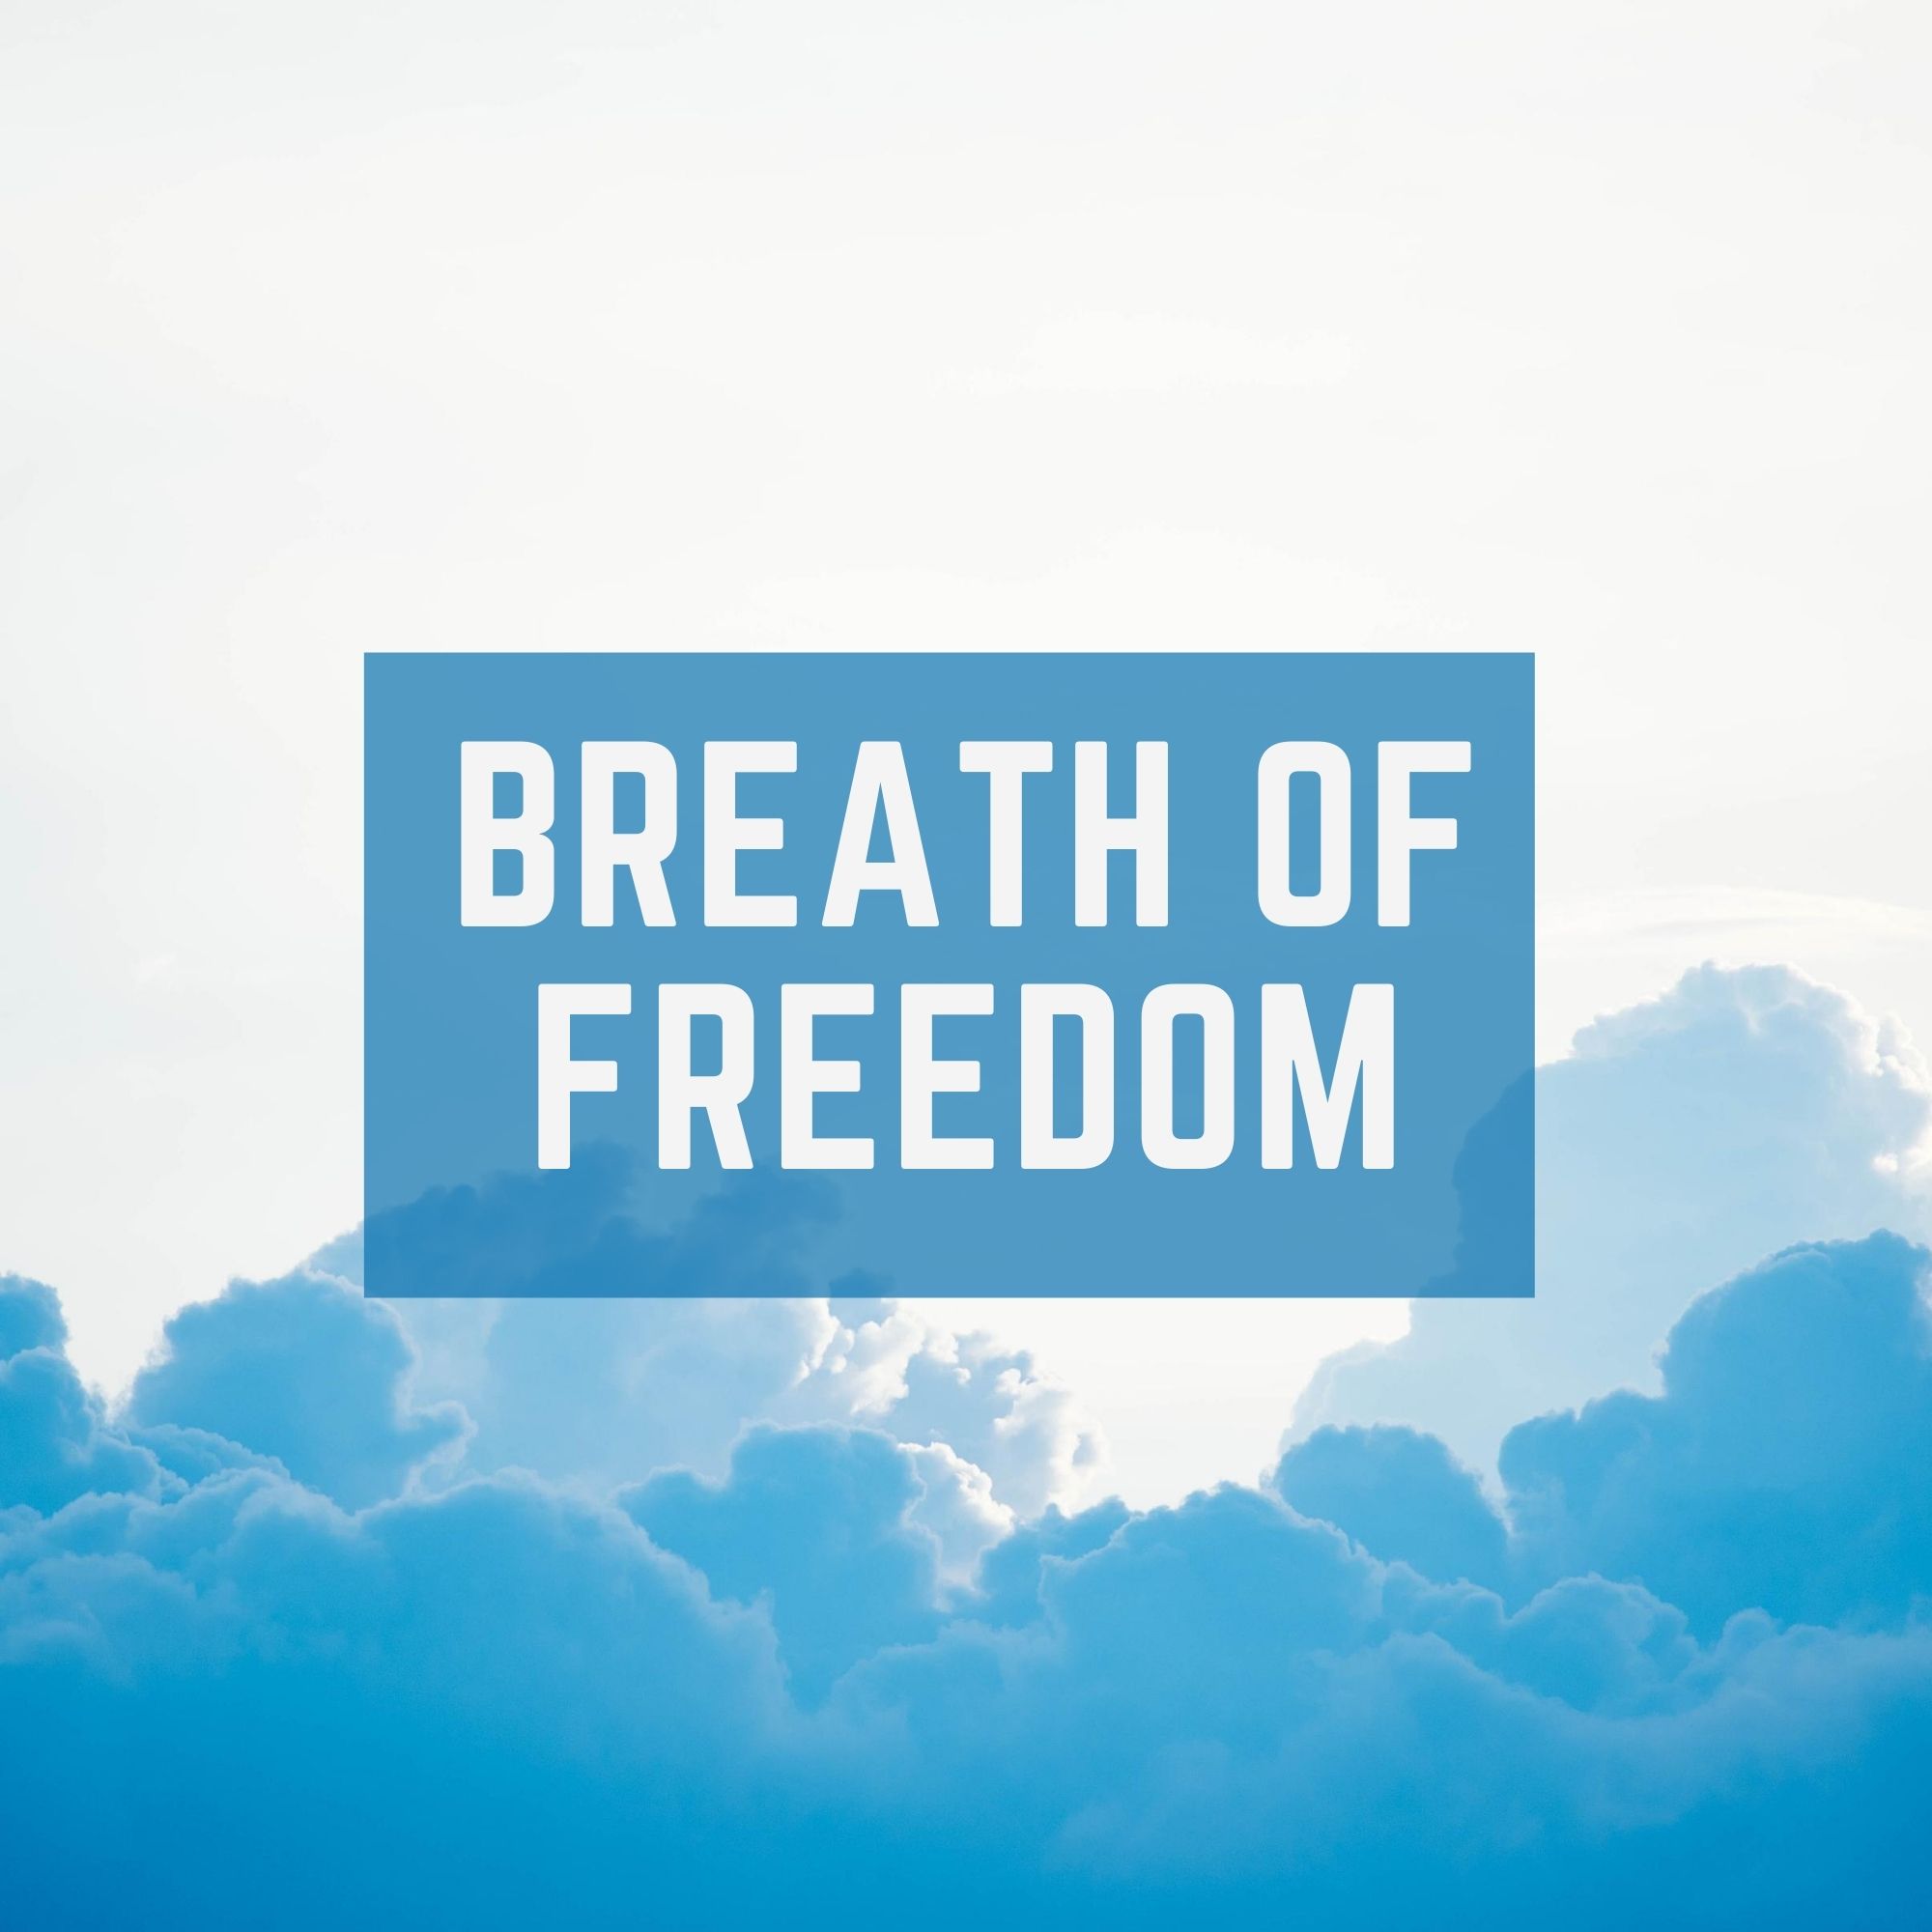 Breath of Freedom